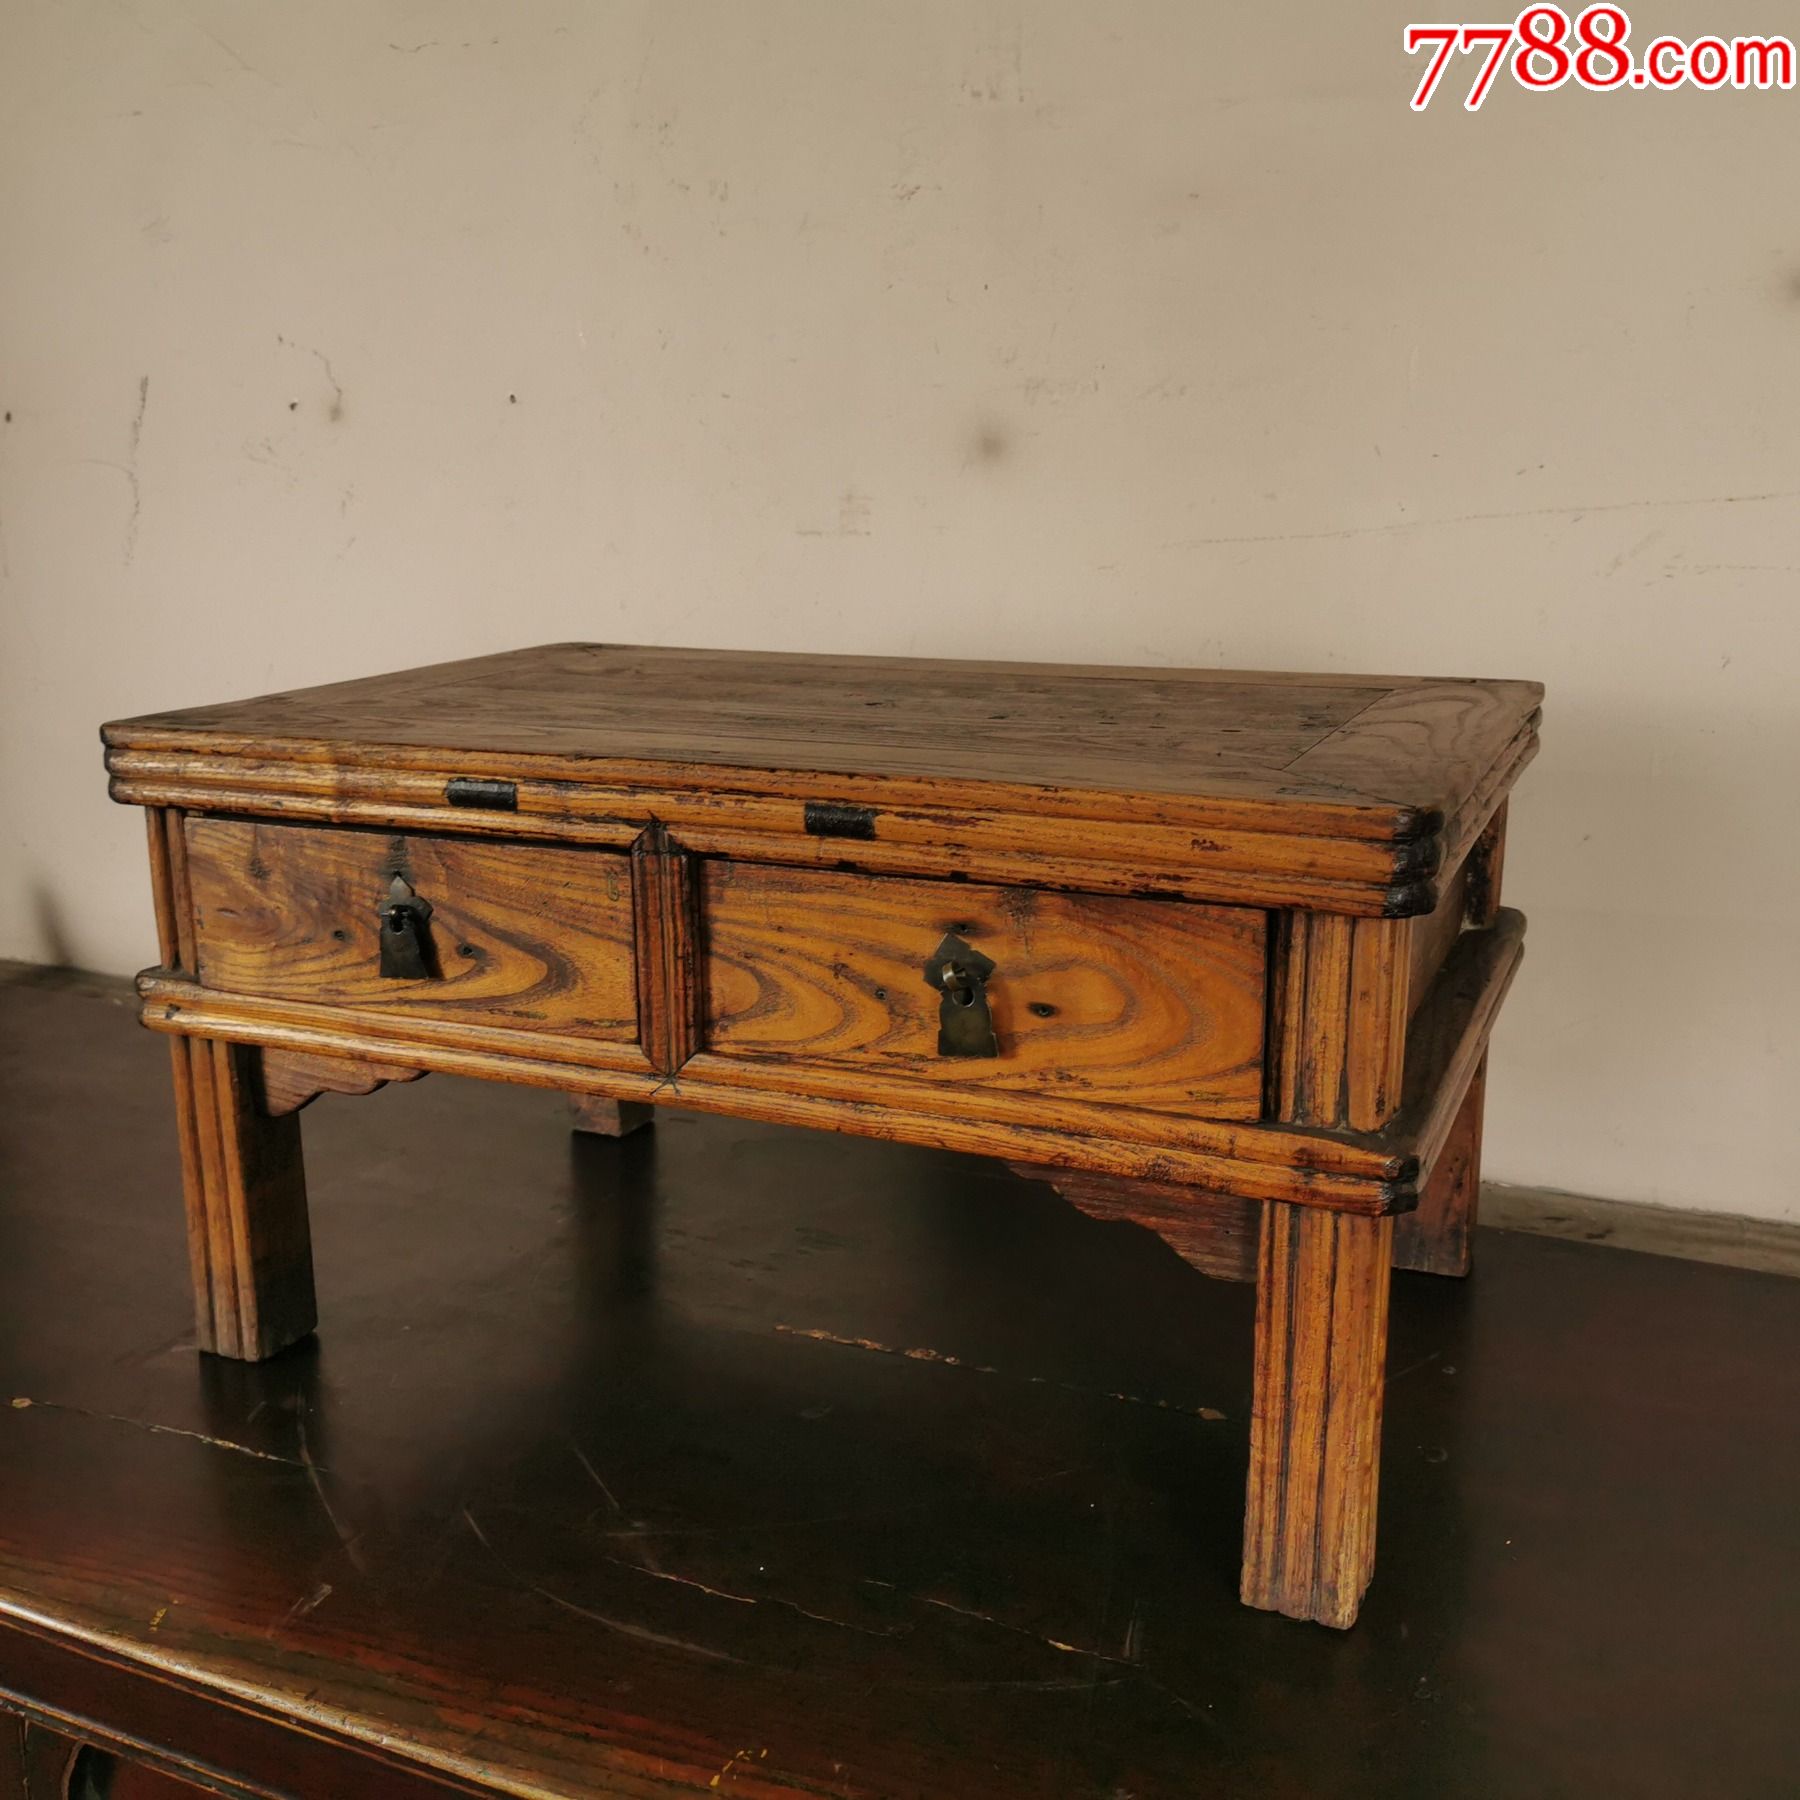 民国榆木书桌方桌子双屉竹节炕桌矮桌木器家具古玩古董收藏老物件